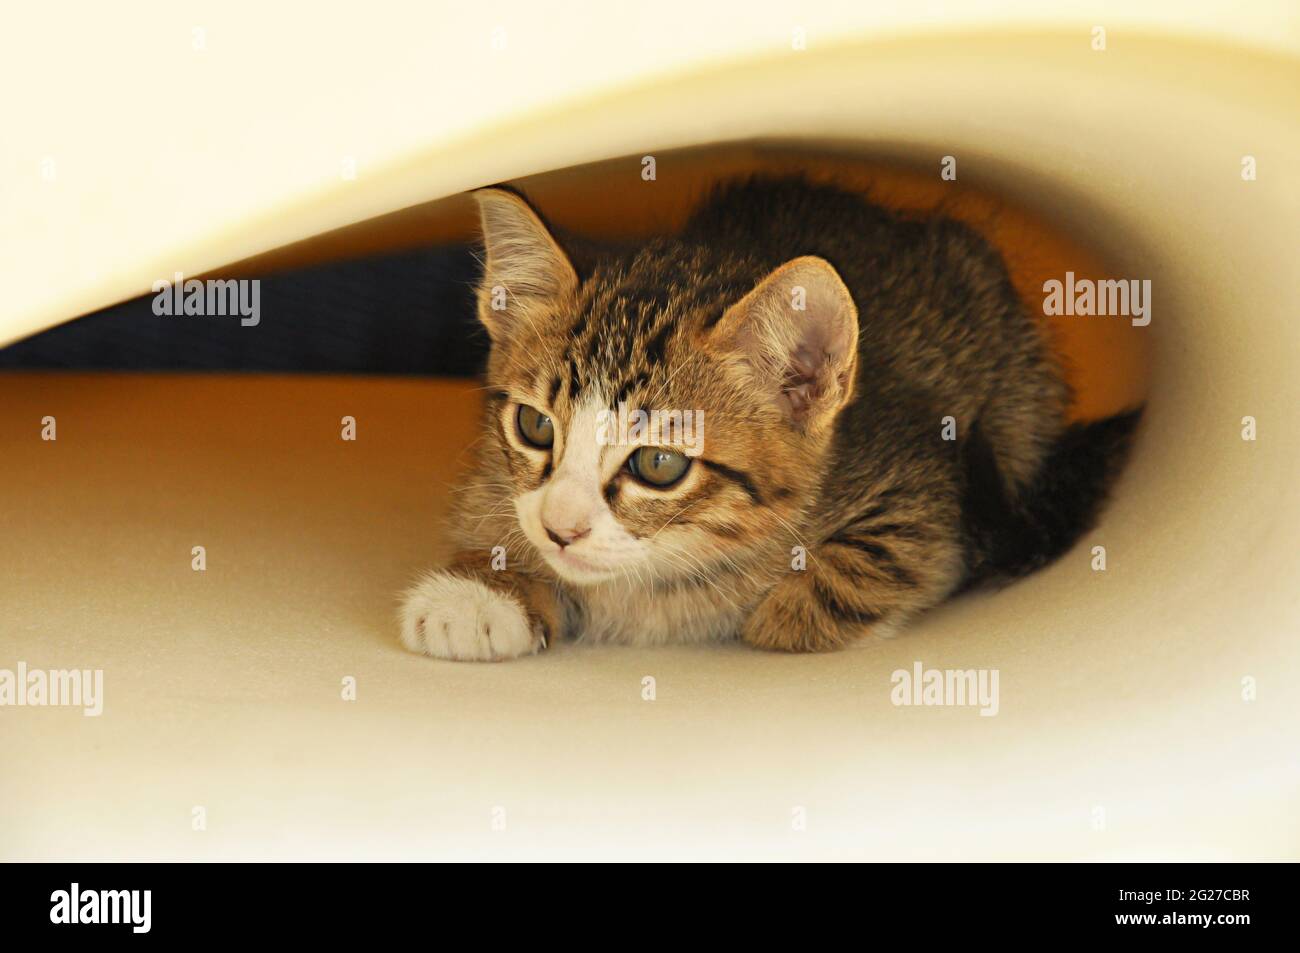 Beautiful adorable cat Stock Photo